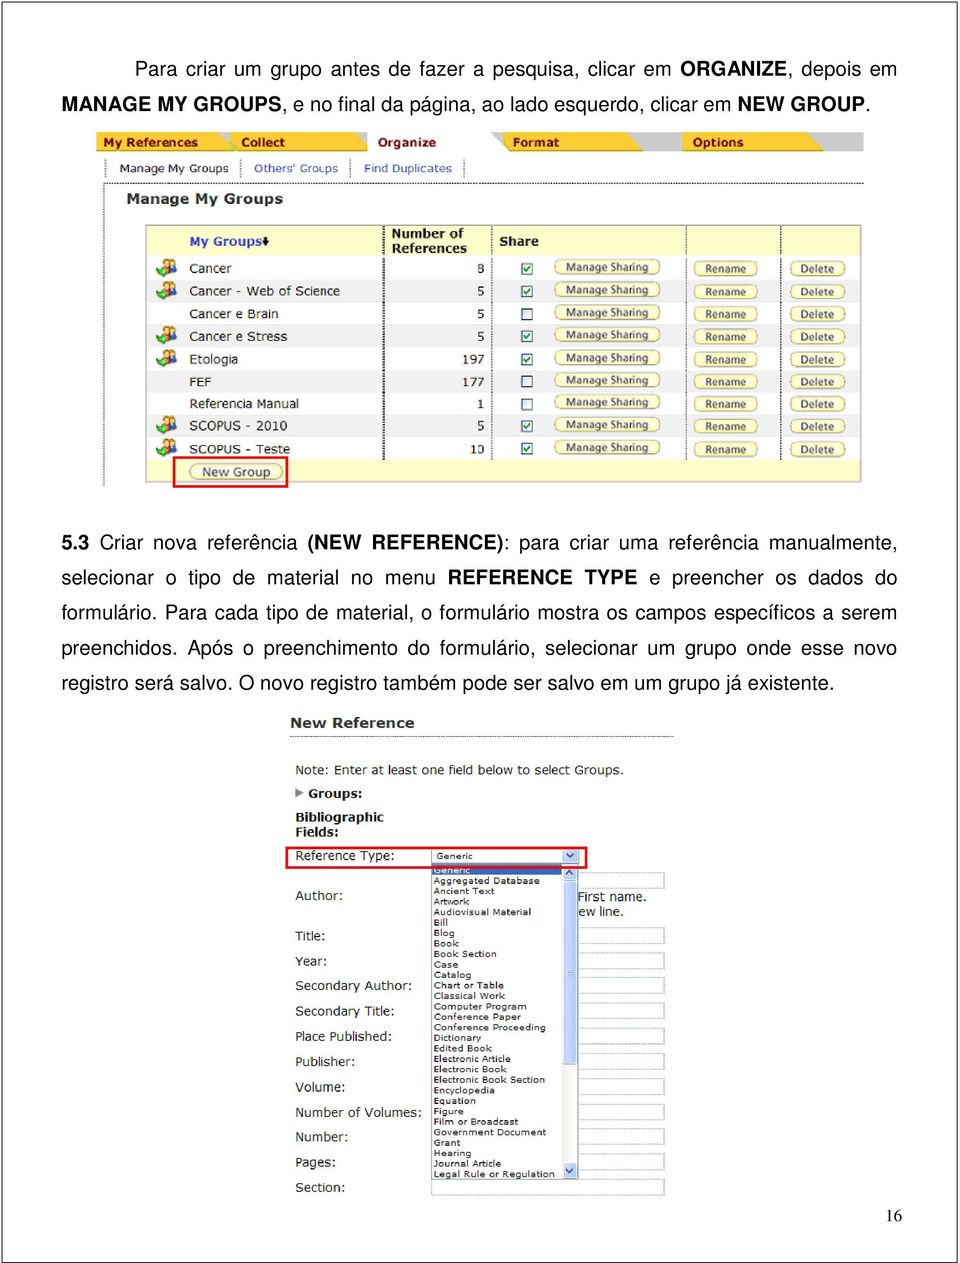 3 Criar nova referência (NEW REFERENCE): para criar uma referência manualmente, selecionar o tipo de material no menu REFERENCE TYPE e